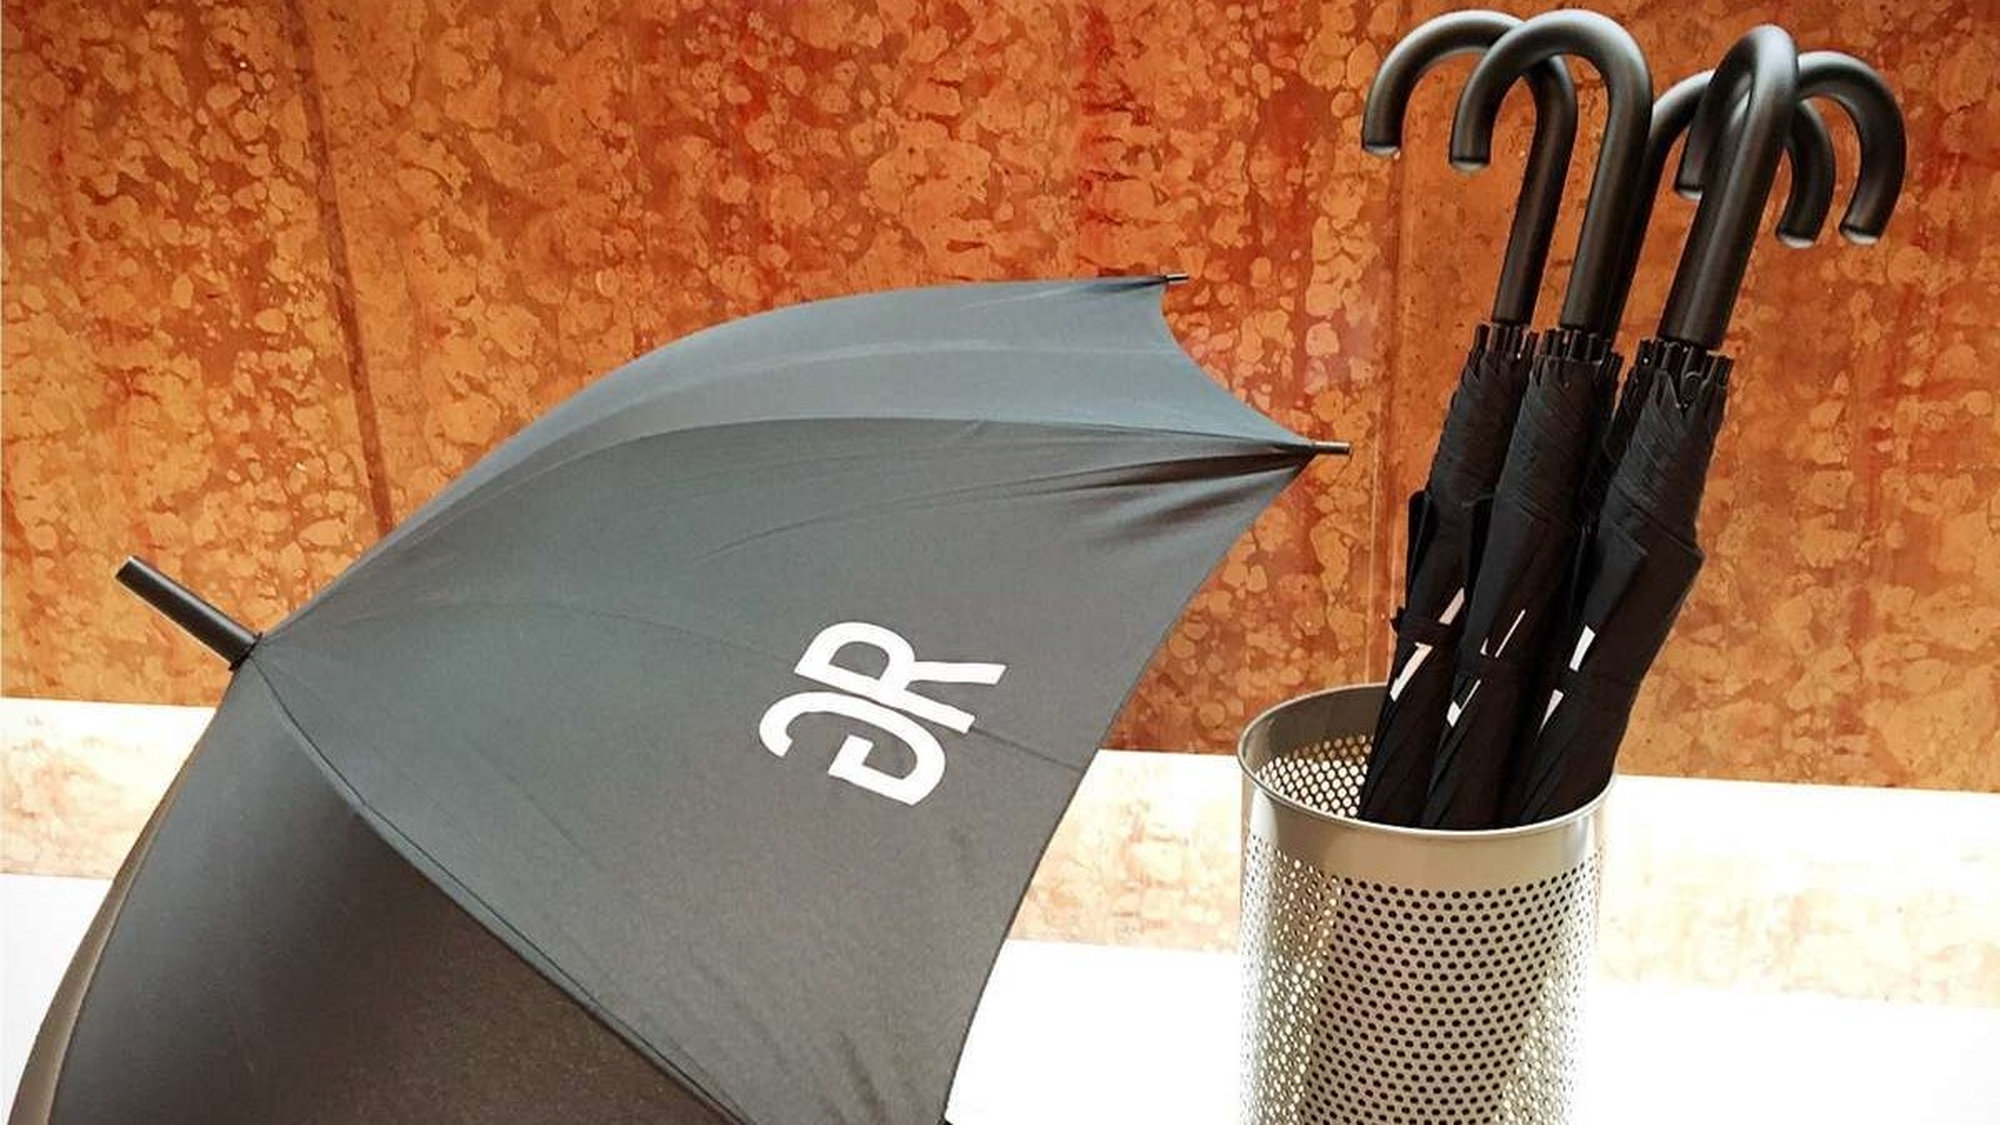 オリジナル傘